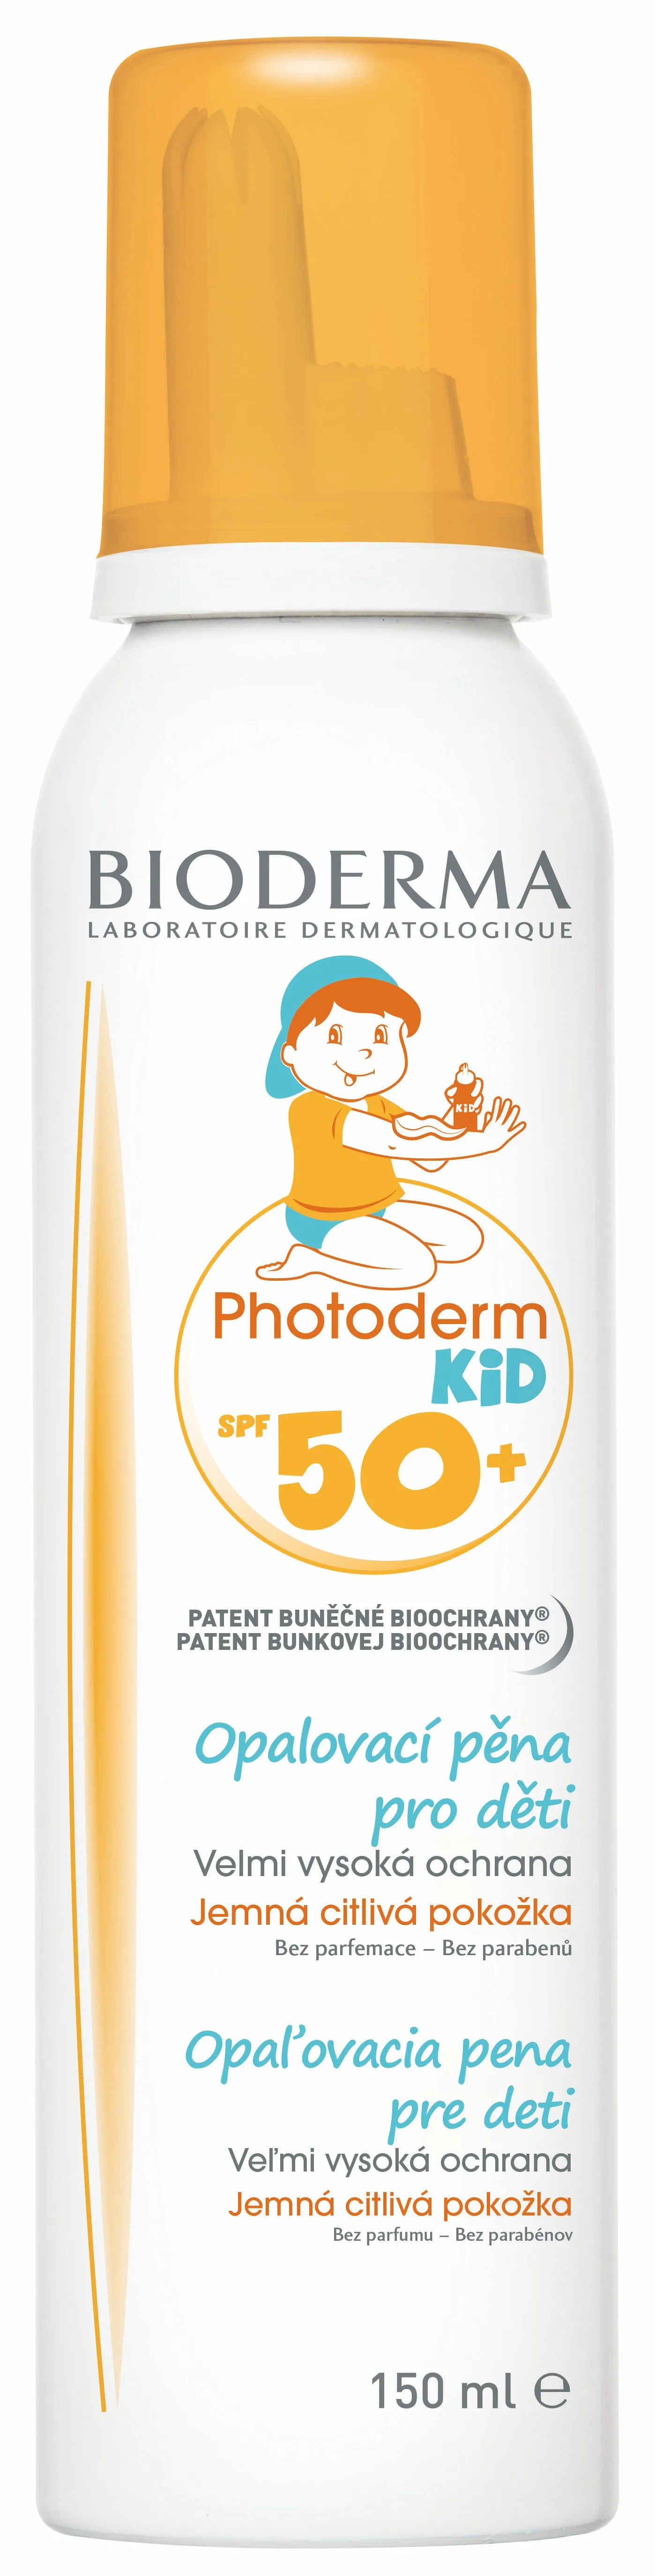 BIODERMA Photoderm KID pro děti SPF50+ opalovací pěna 150 ml